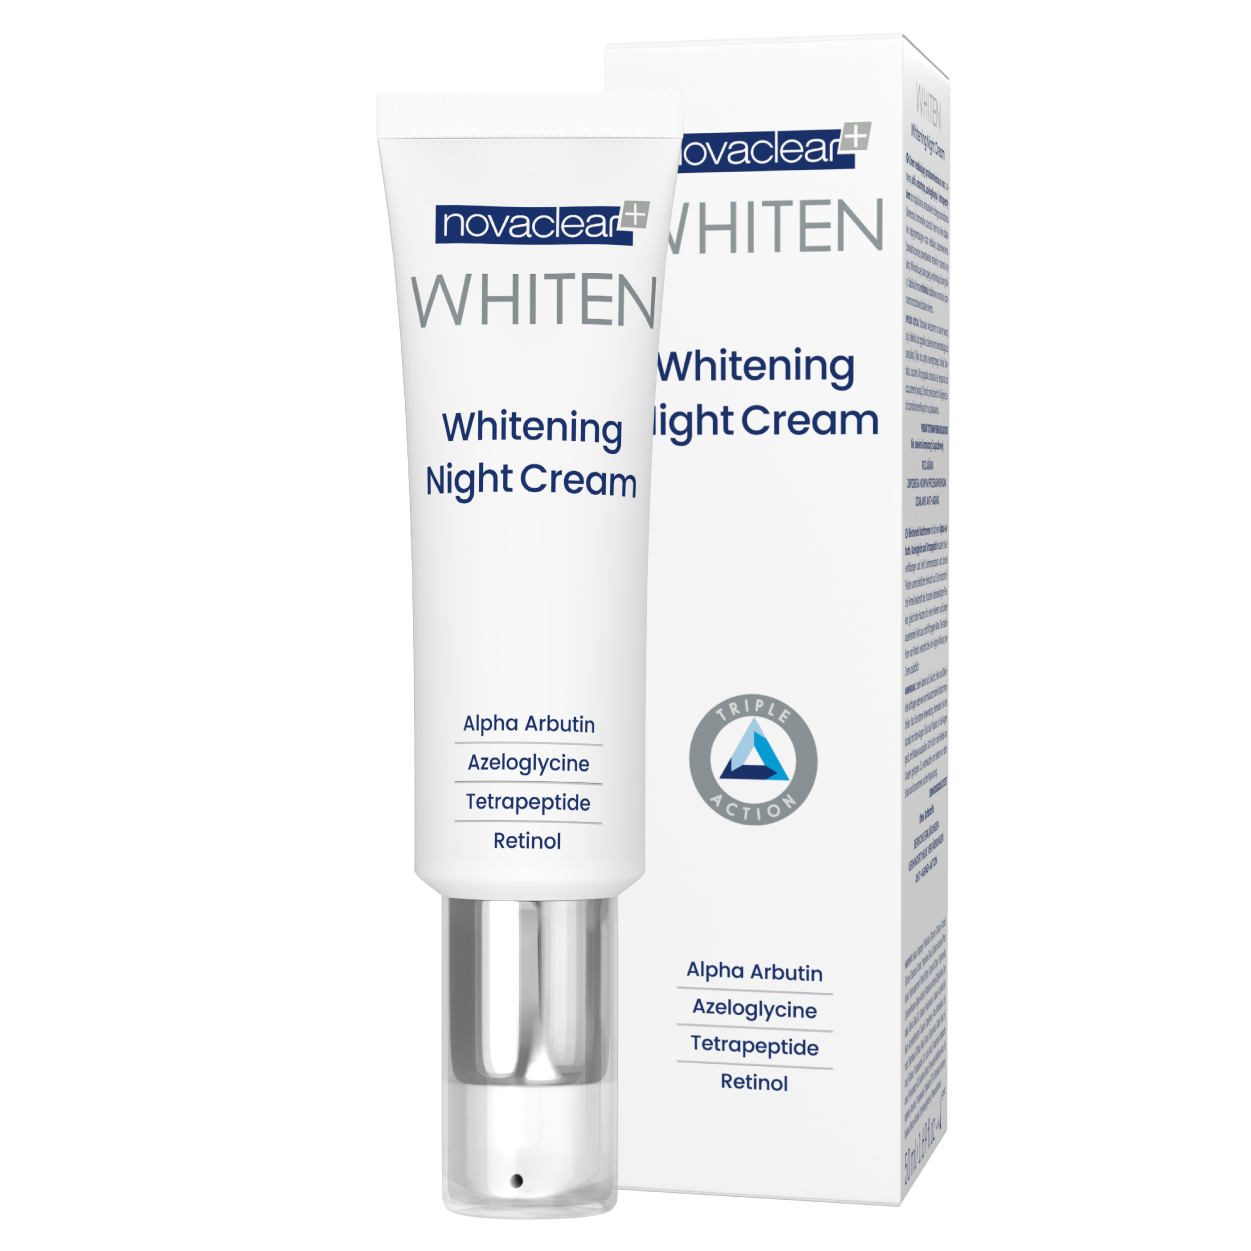 novaclear-whiten-whitening-night-cream